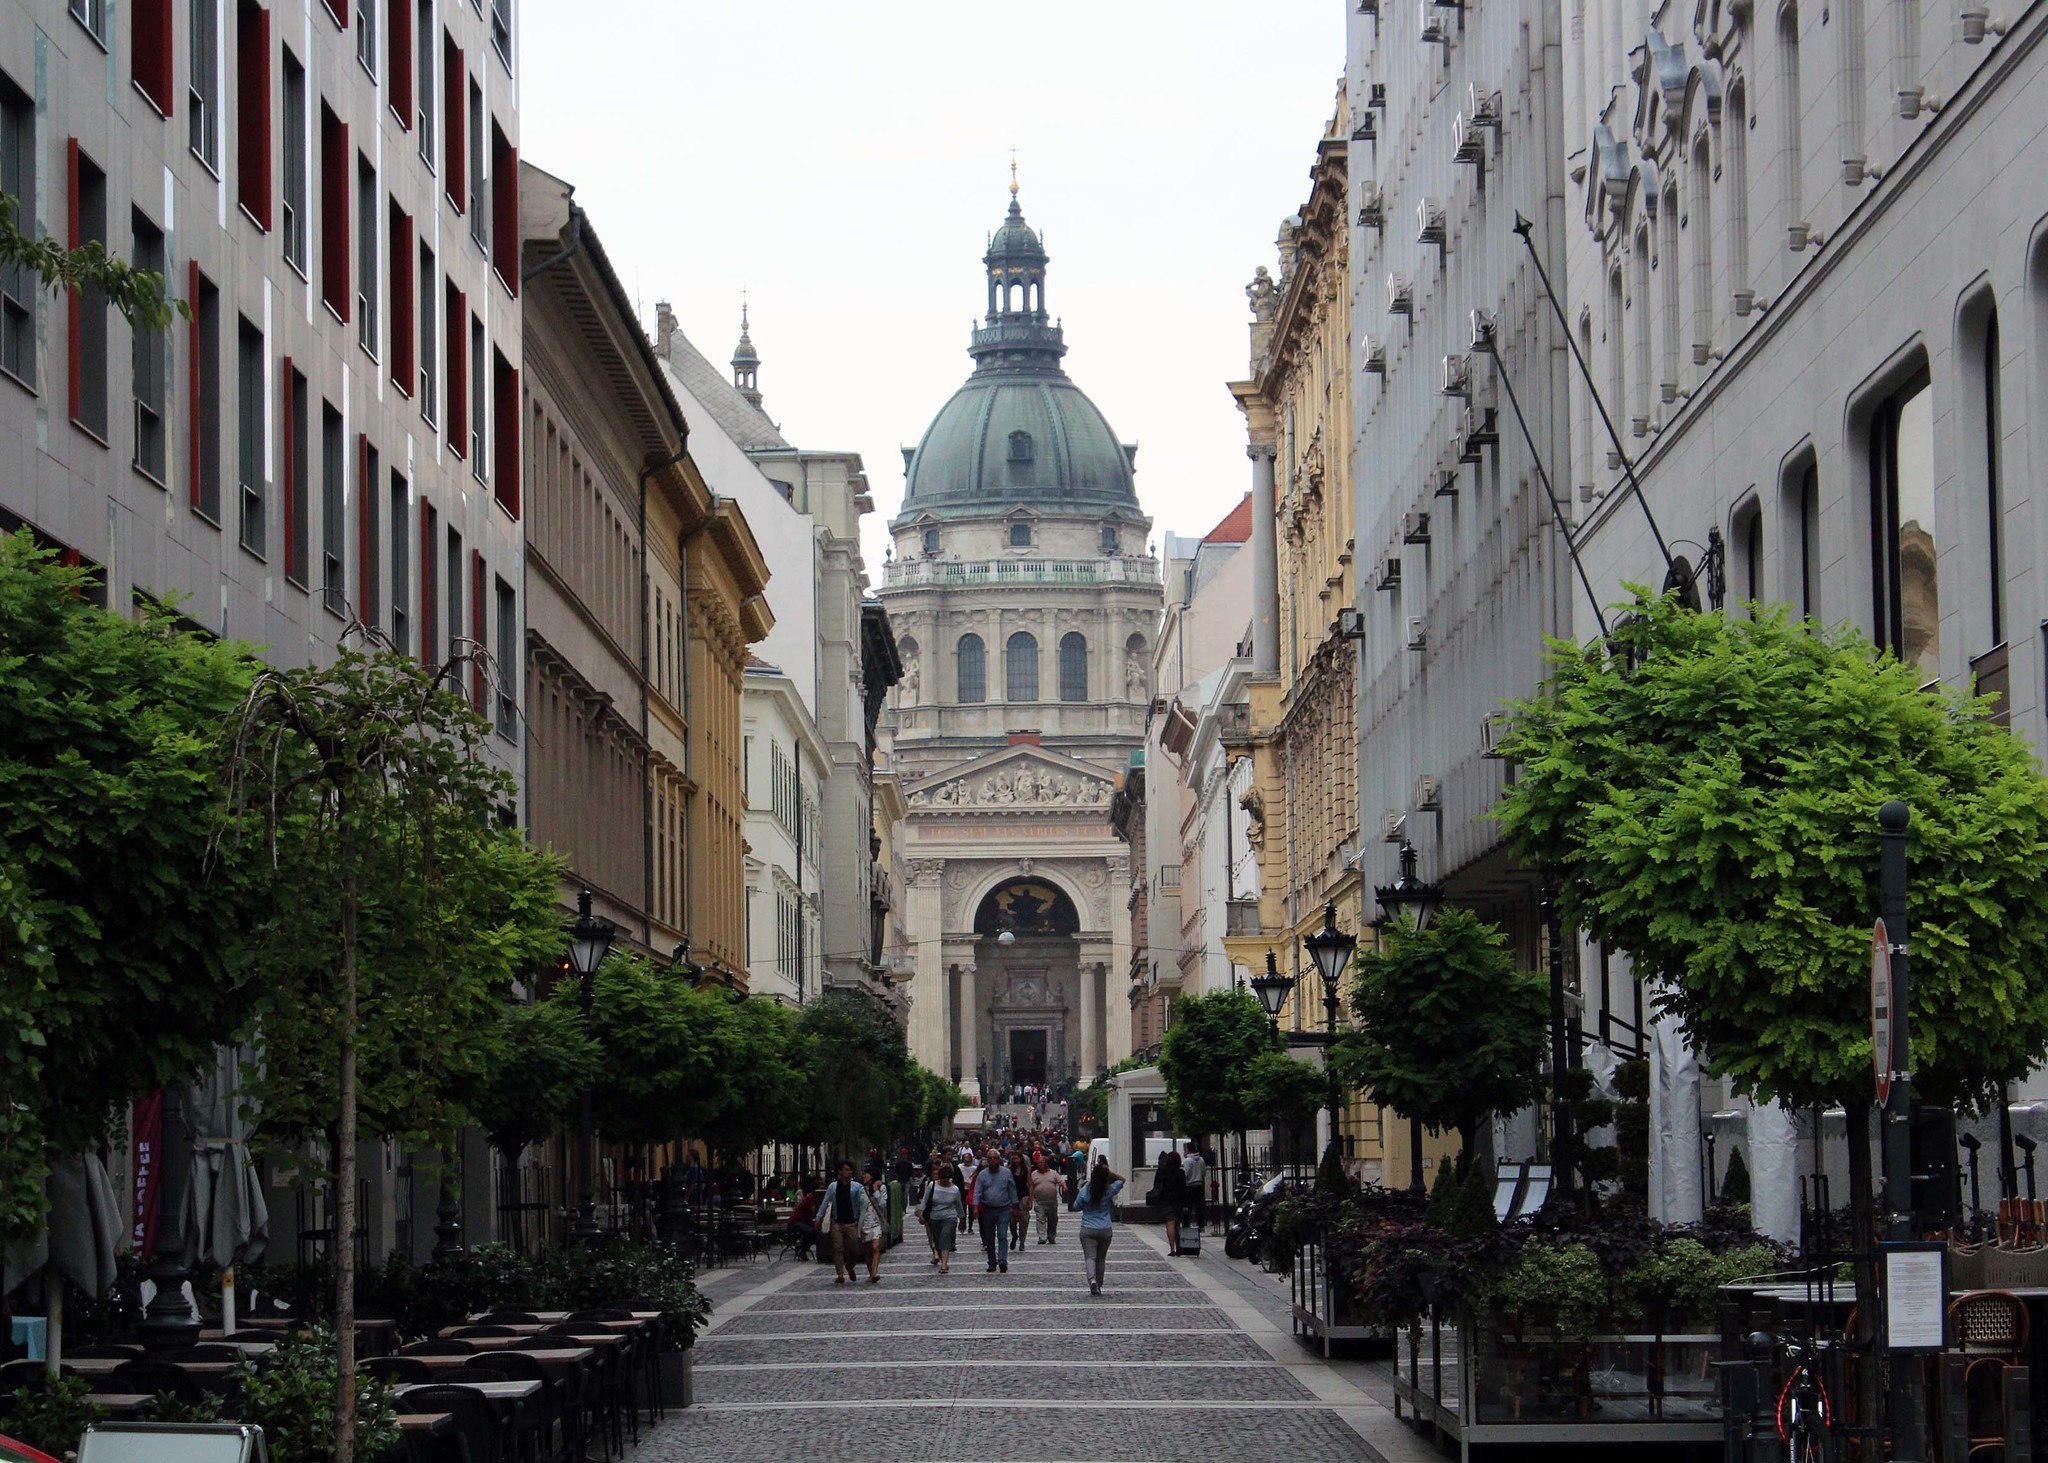 St.-Stephans-Basilika Budapest kató alpár